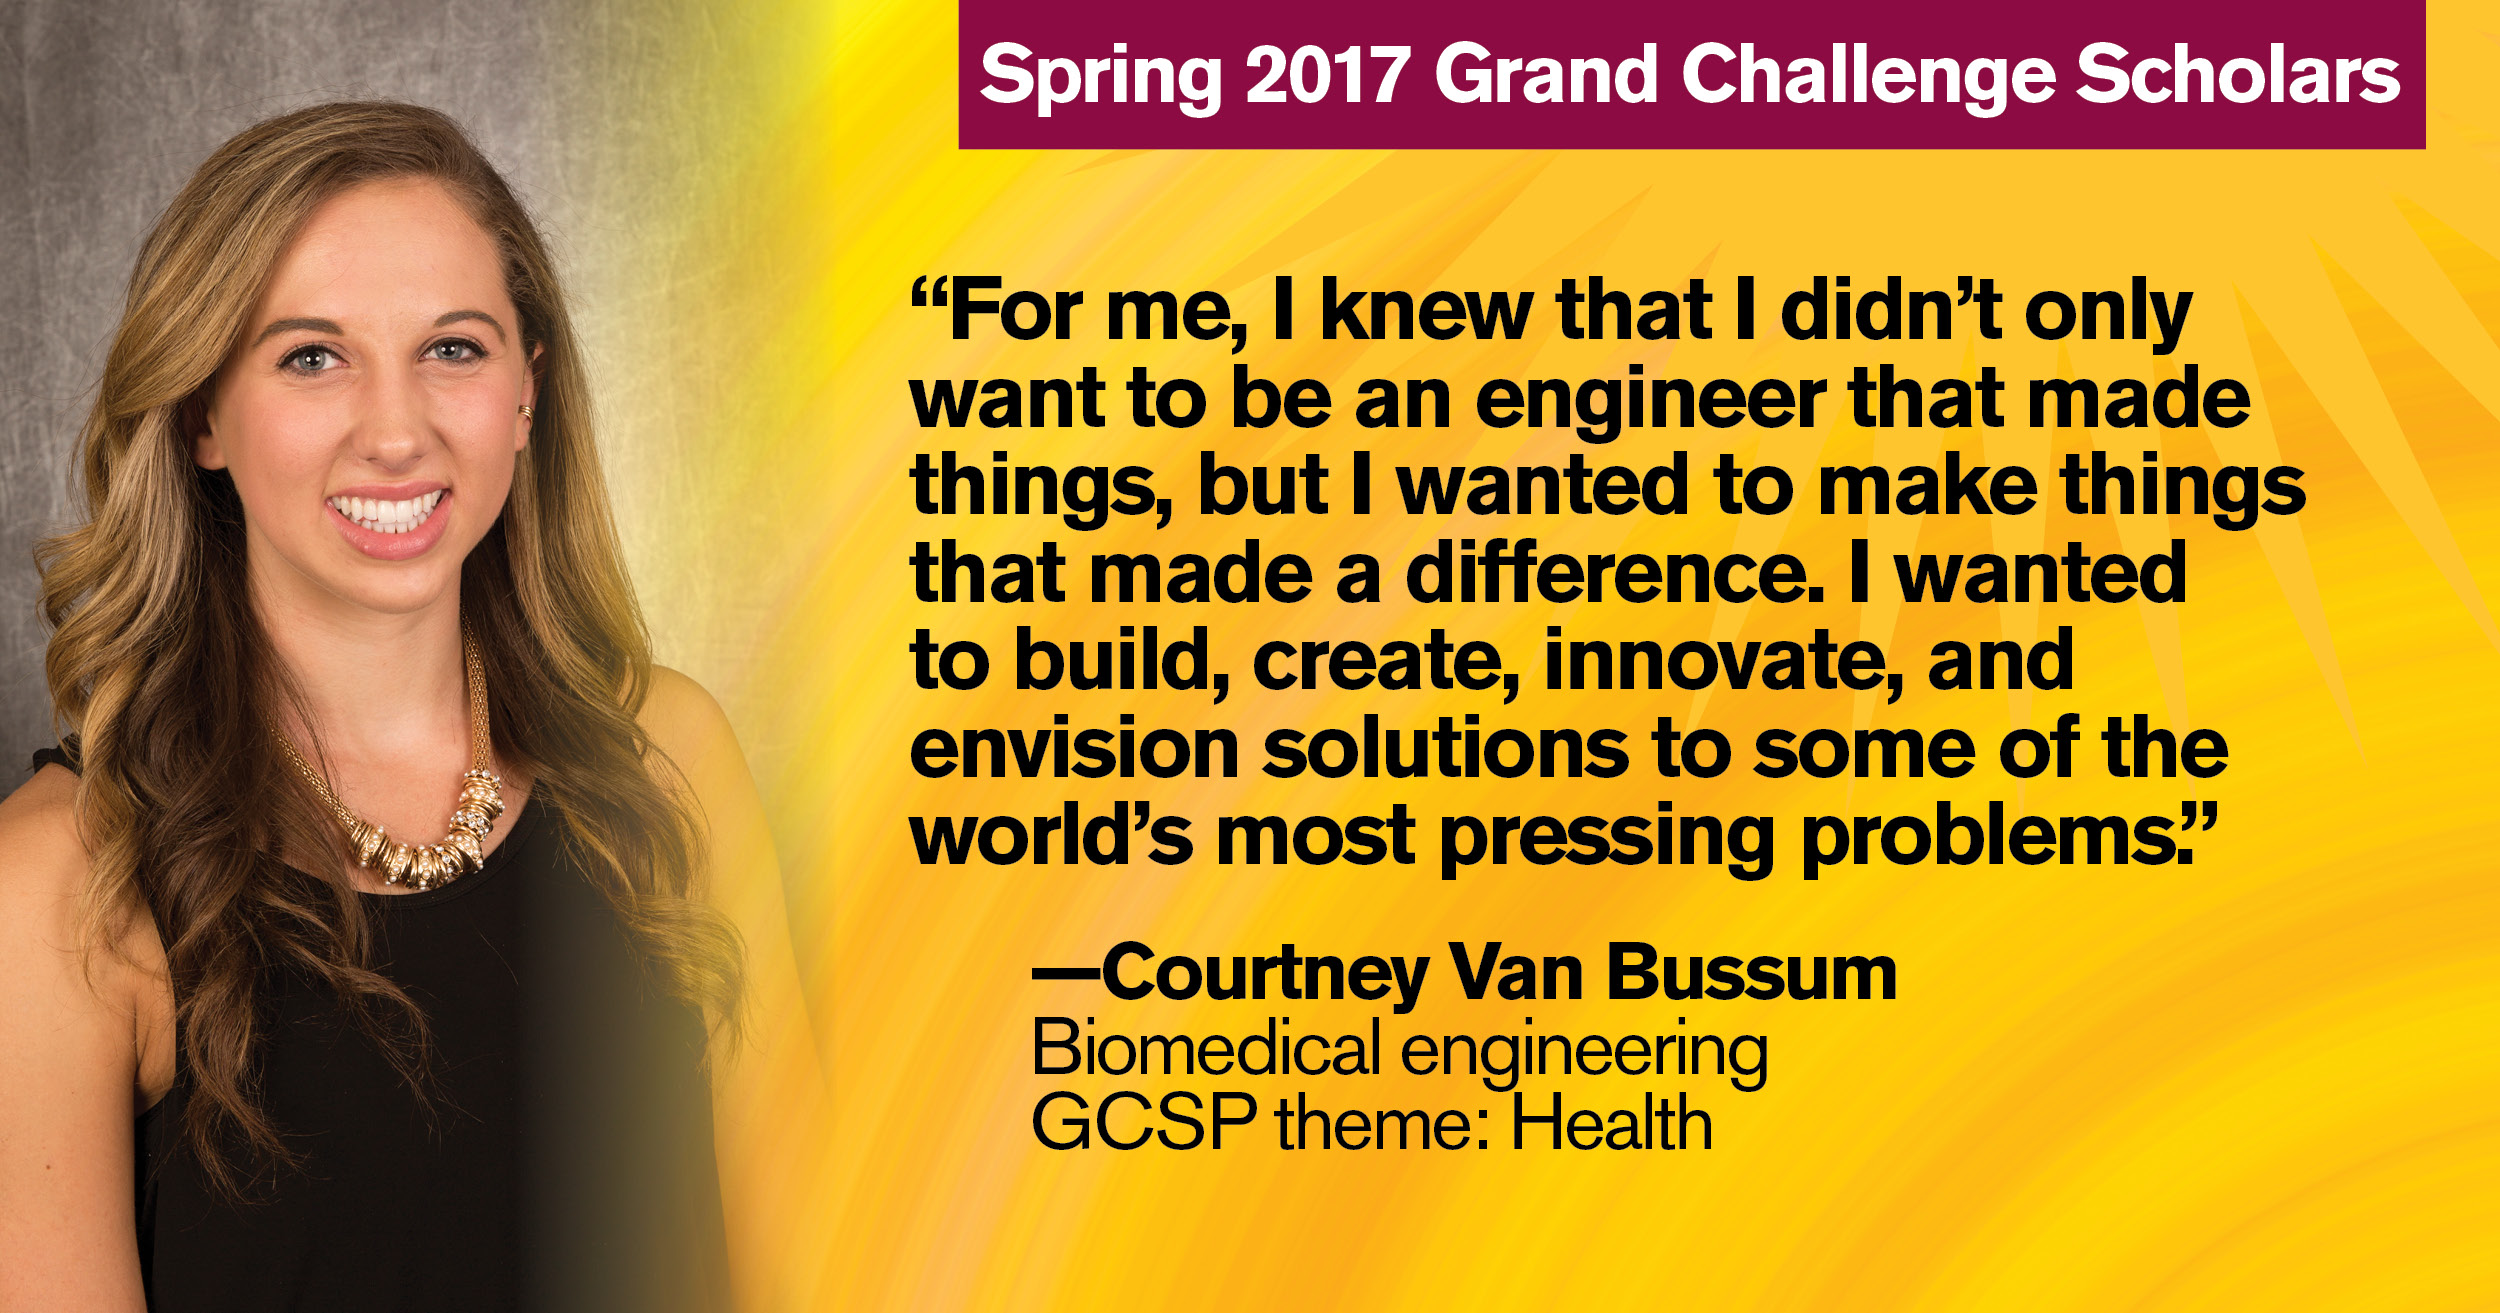 Spring 2017 Grand Challenge Scholar Courtney Van Bussum